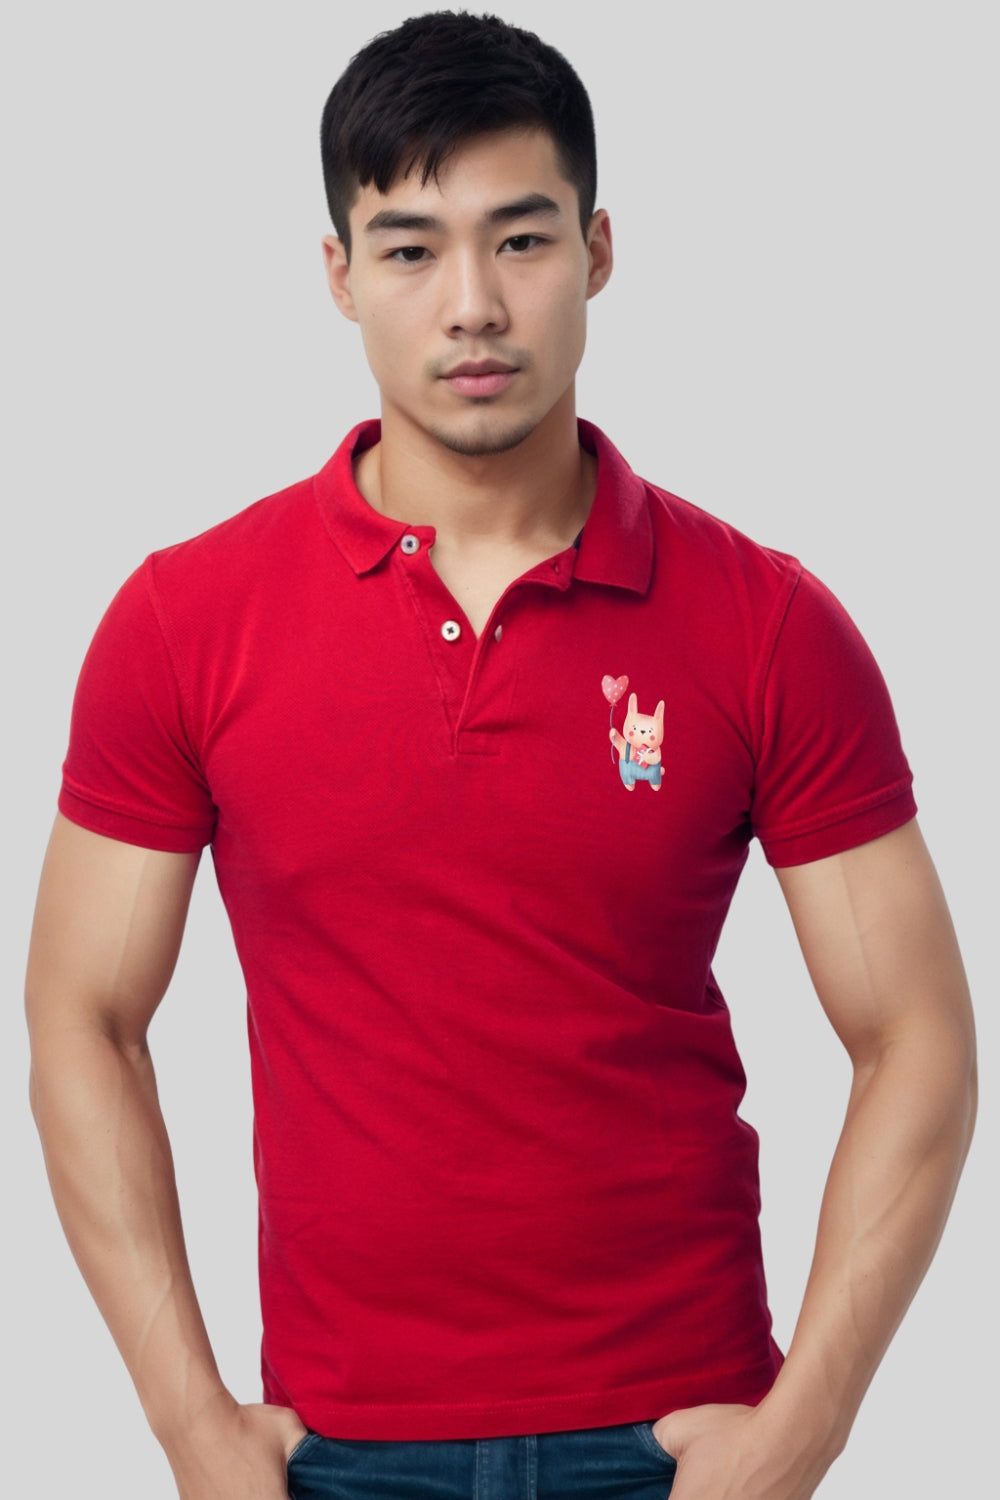 Cute Dog Pocket Printed Red Polo Tshirt